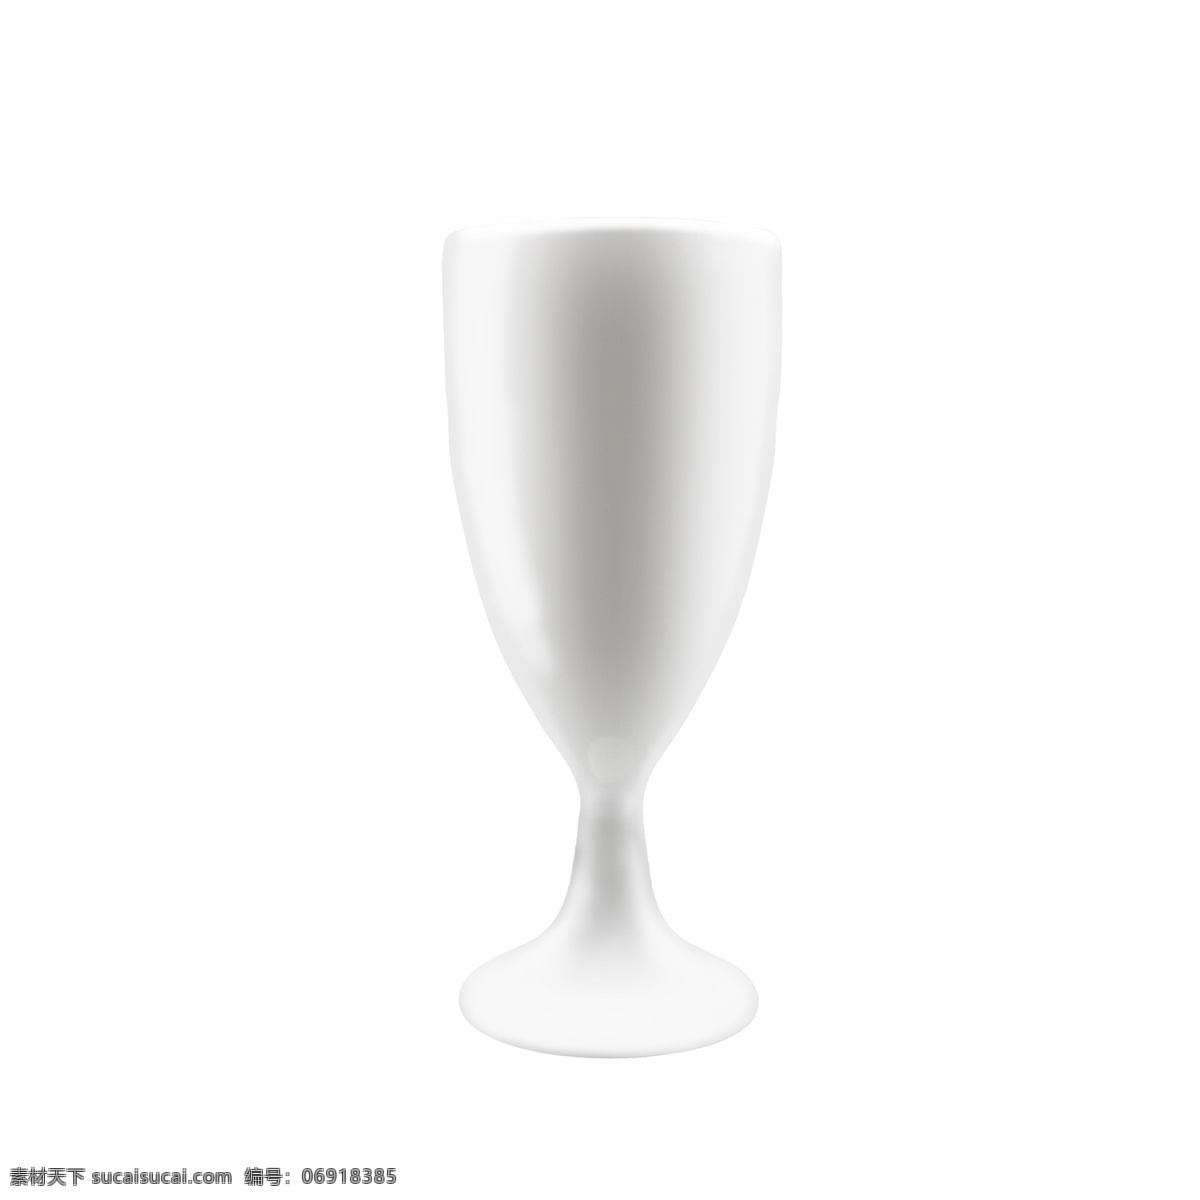 酒杯 实物 陶瓷 白酒 杯 茅台 酒杯实物 白酒杯 茅台杯 白色陶瓷杯 底座杯 古代酒杯 五粮液小杯子